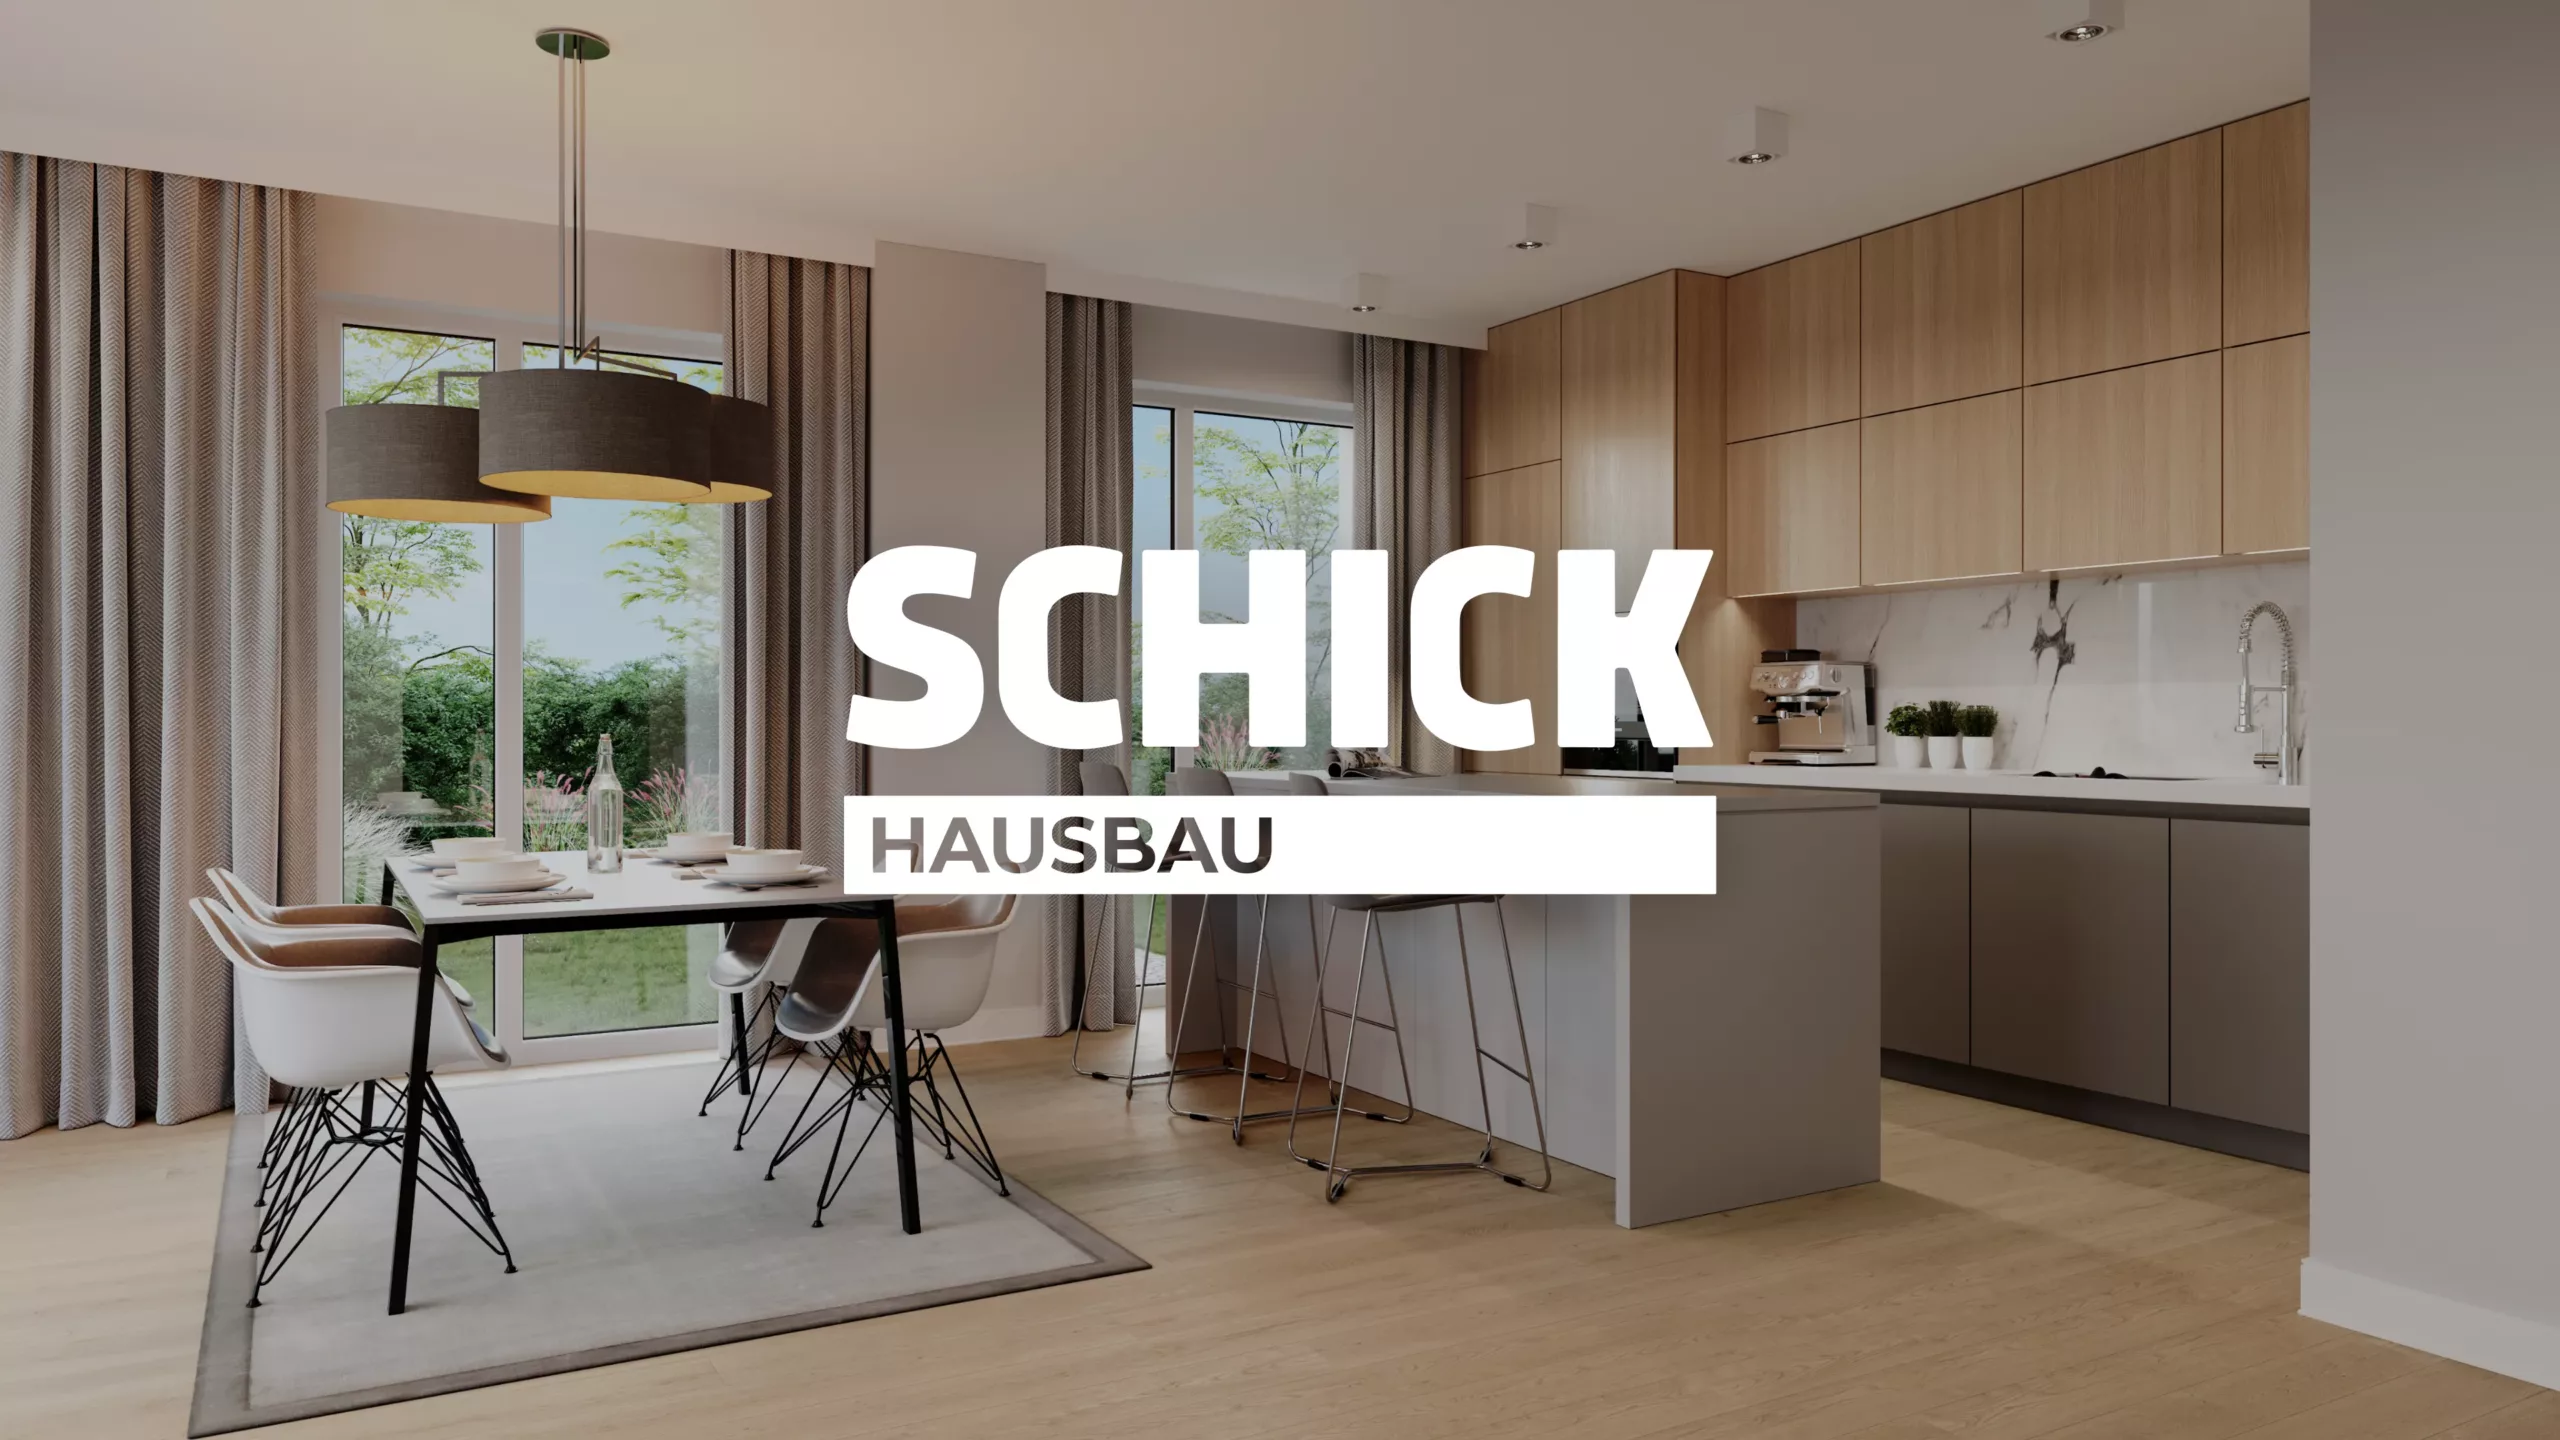 SCHICK Hausbau - Innenvisualisierung Küche/Essen